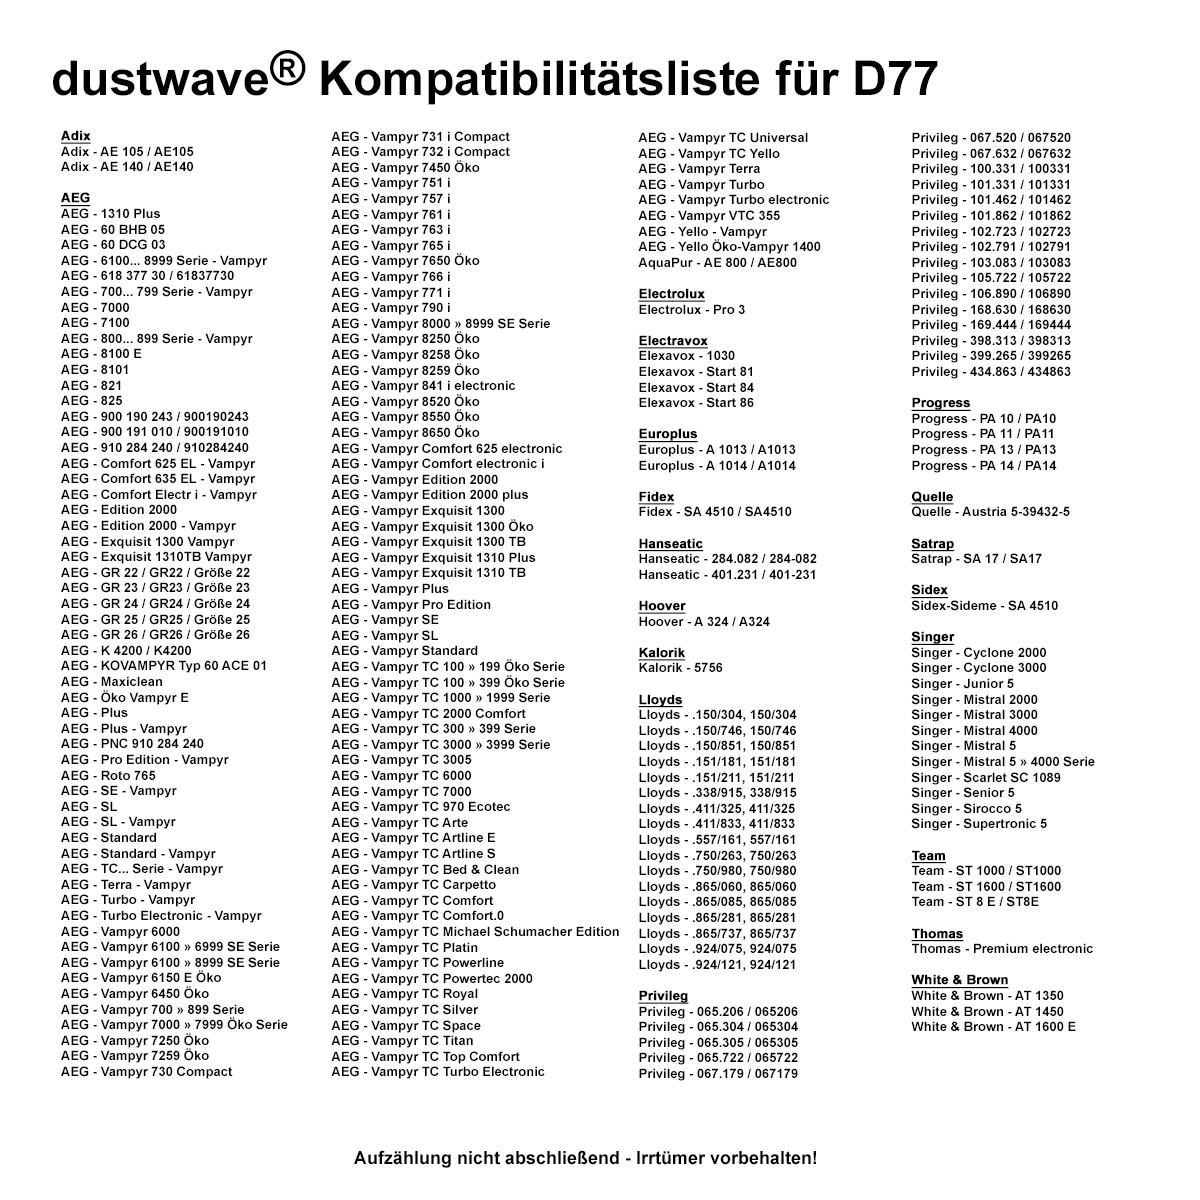 Dustwave® 10 Staubsaugerbeutel für AEG Vampyr TC Powertec 2000 - hocheffizient, mehrlagiges Mikrovlies mit Hygieneverschluss - Made in Germany